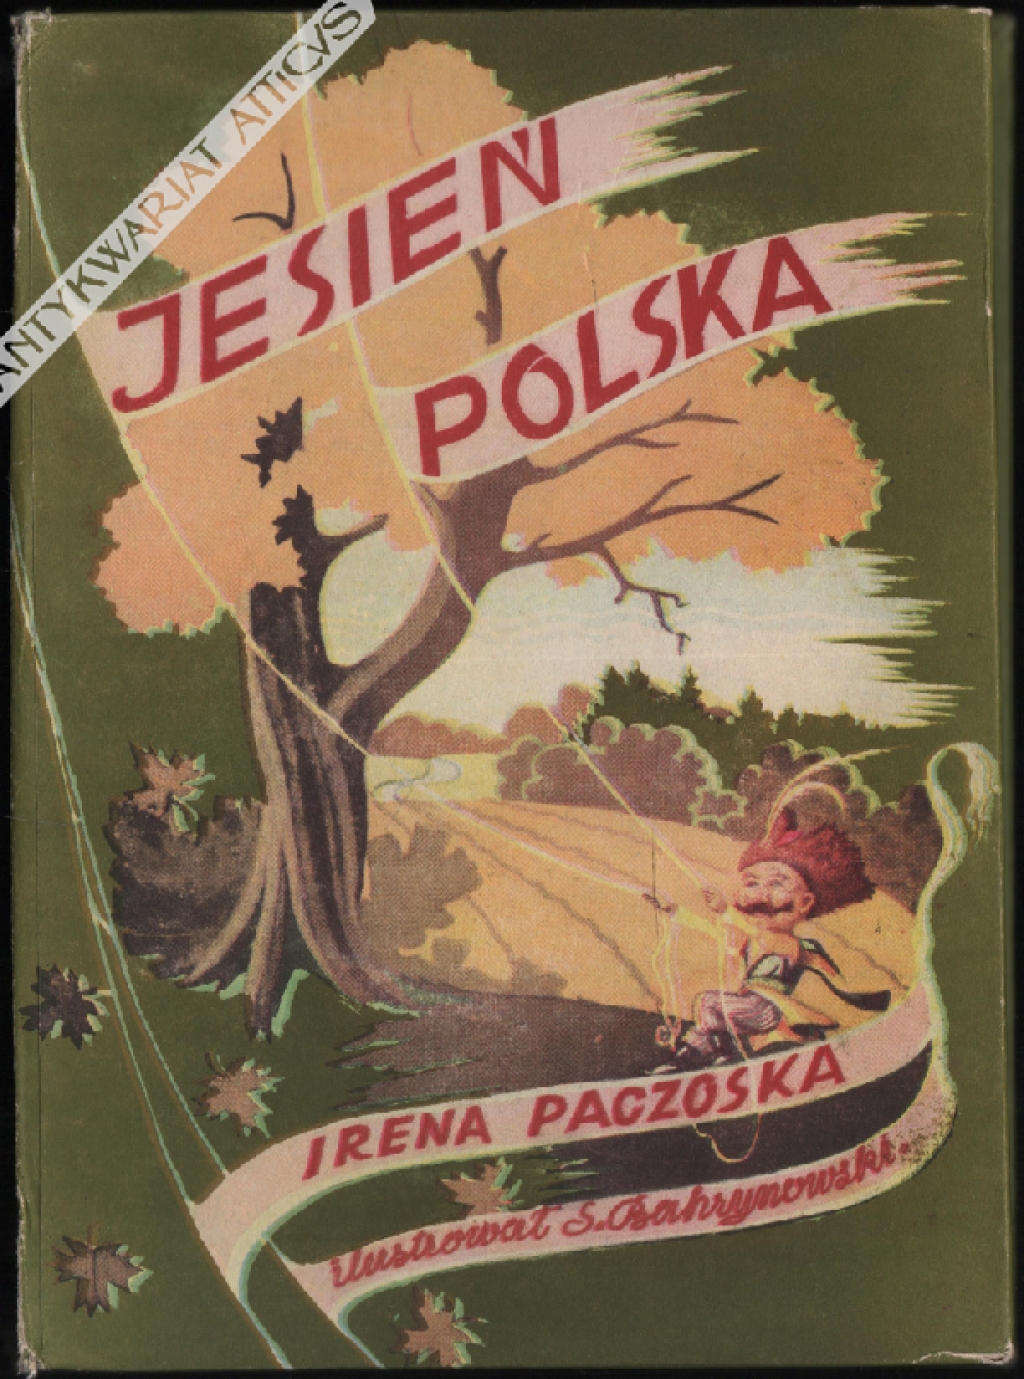 Jesień polska